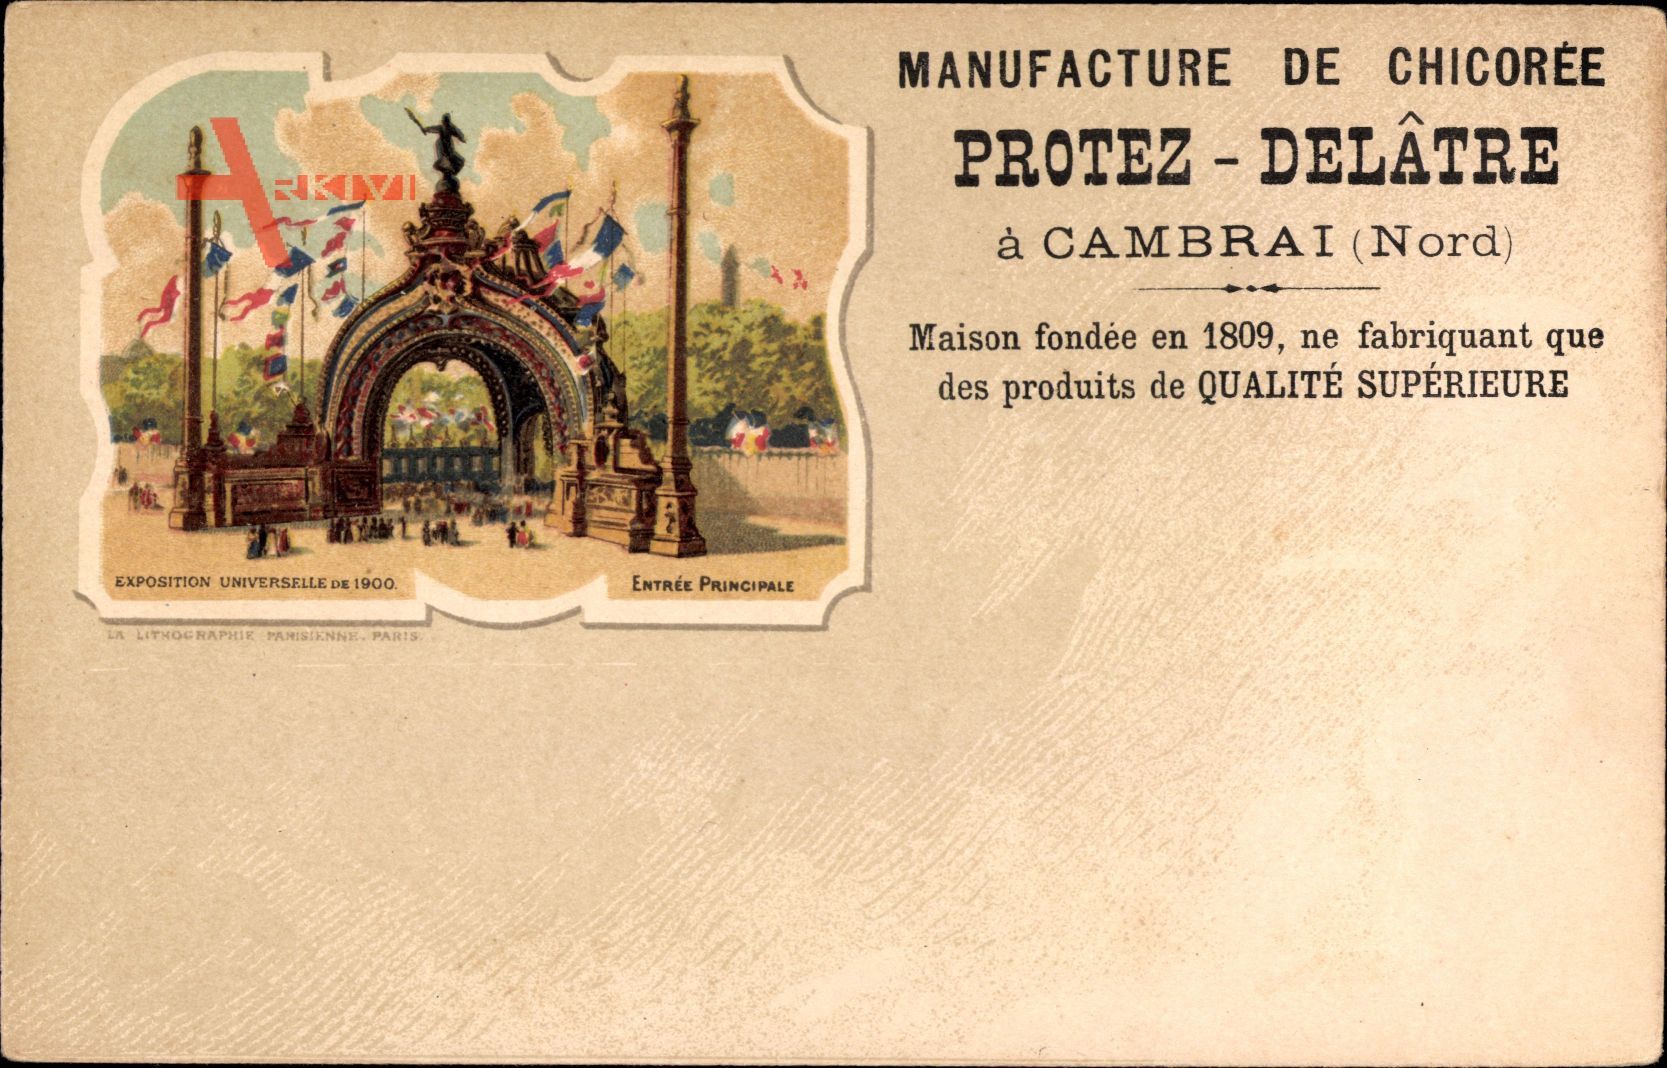 Exposition Universelle de 1900, Manufacture de Chicoree a Cambrai